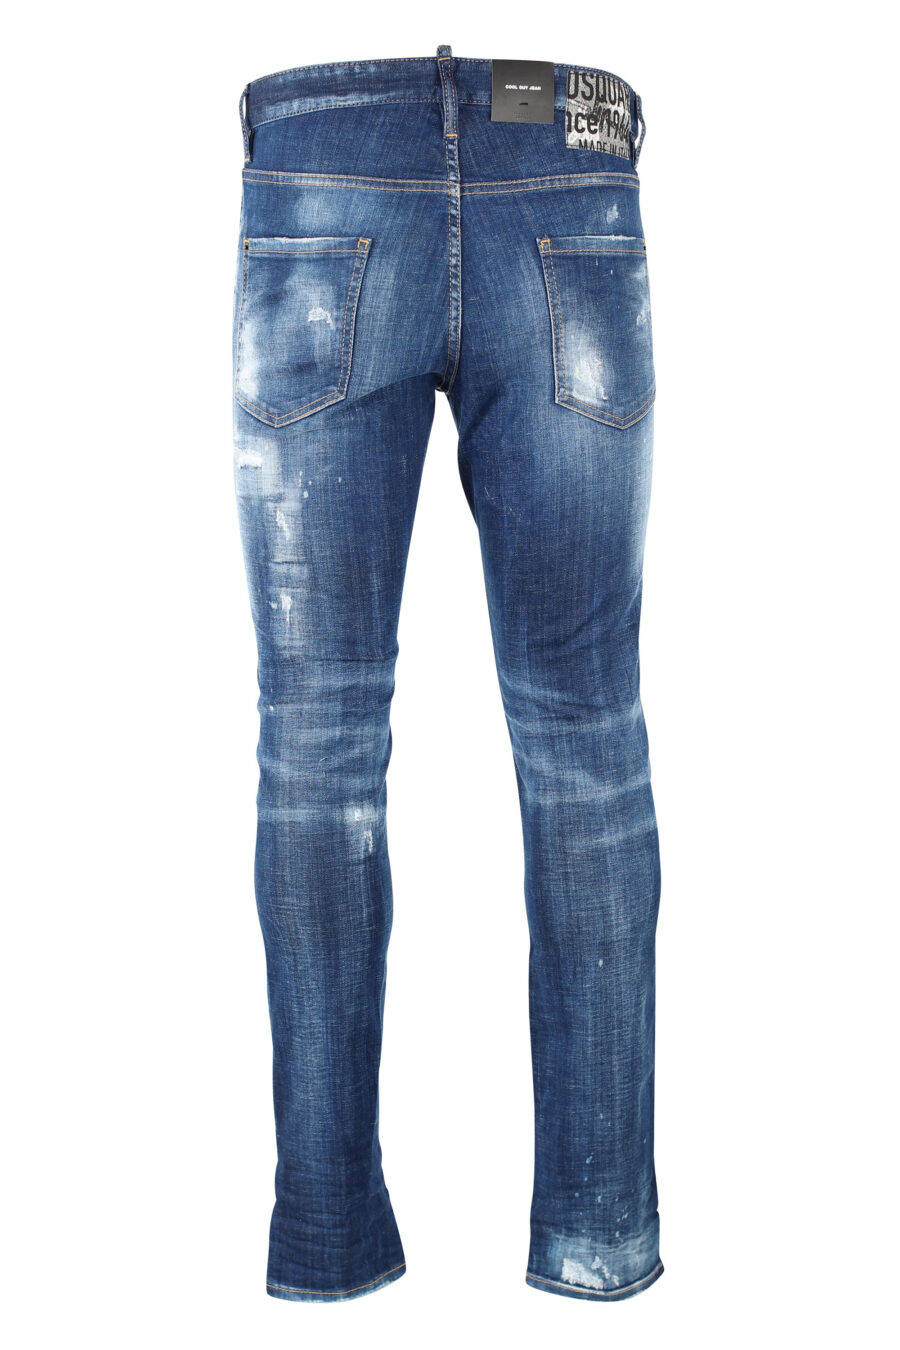 Pantalón vaquero "Cool guy jean" azul con rotos - IMG 0844